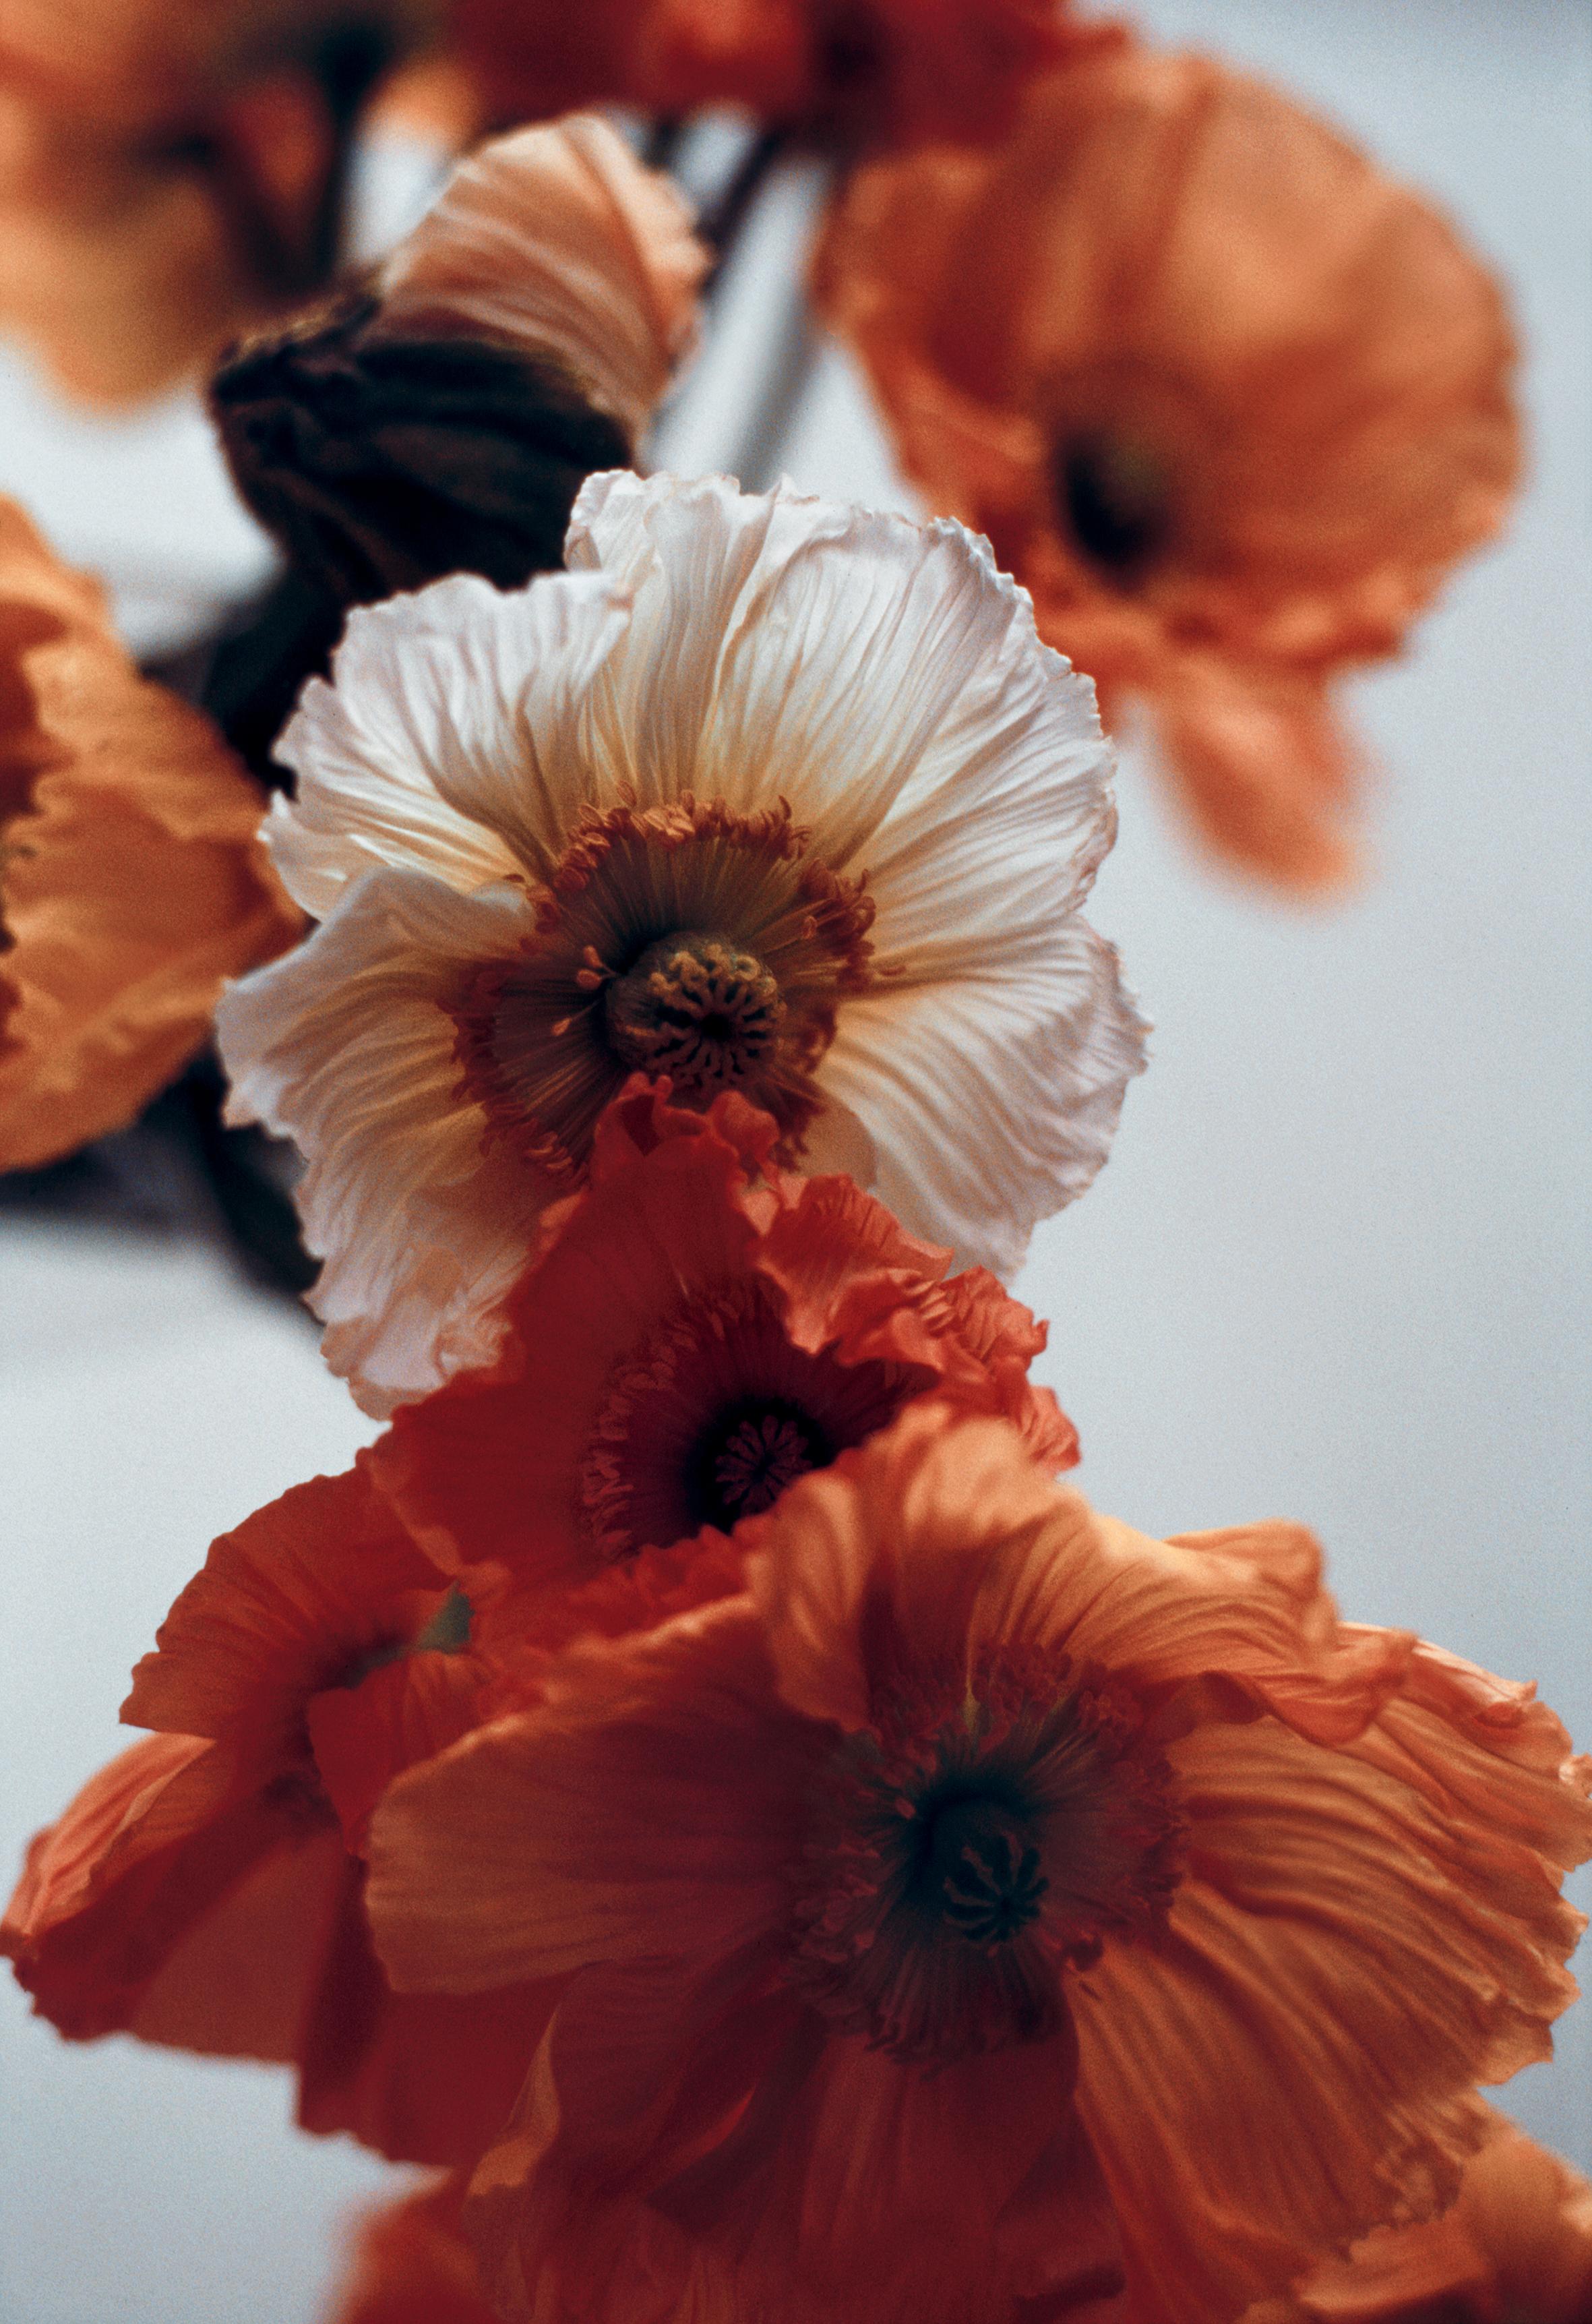 Orange Mohnblumen Nr.4 – Analogue Blumenfotografie, limitierte Auflage von 20 Stück